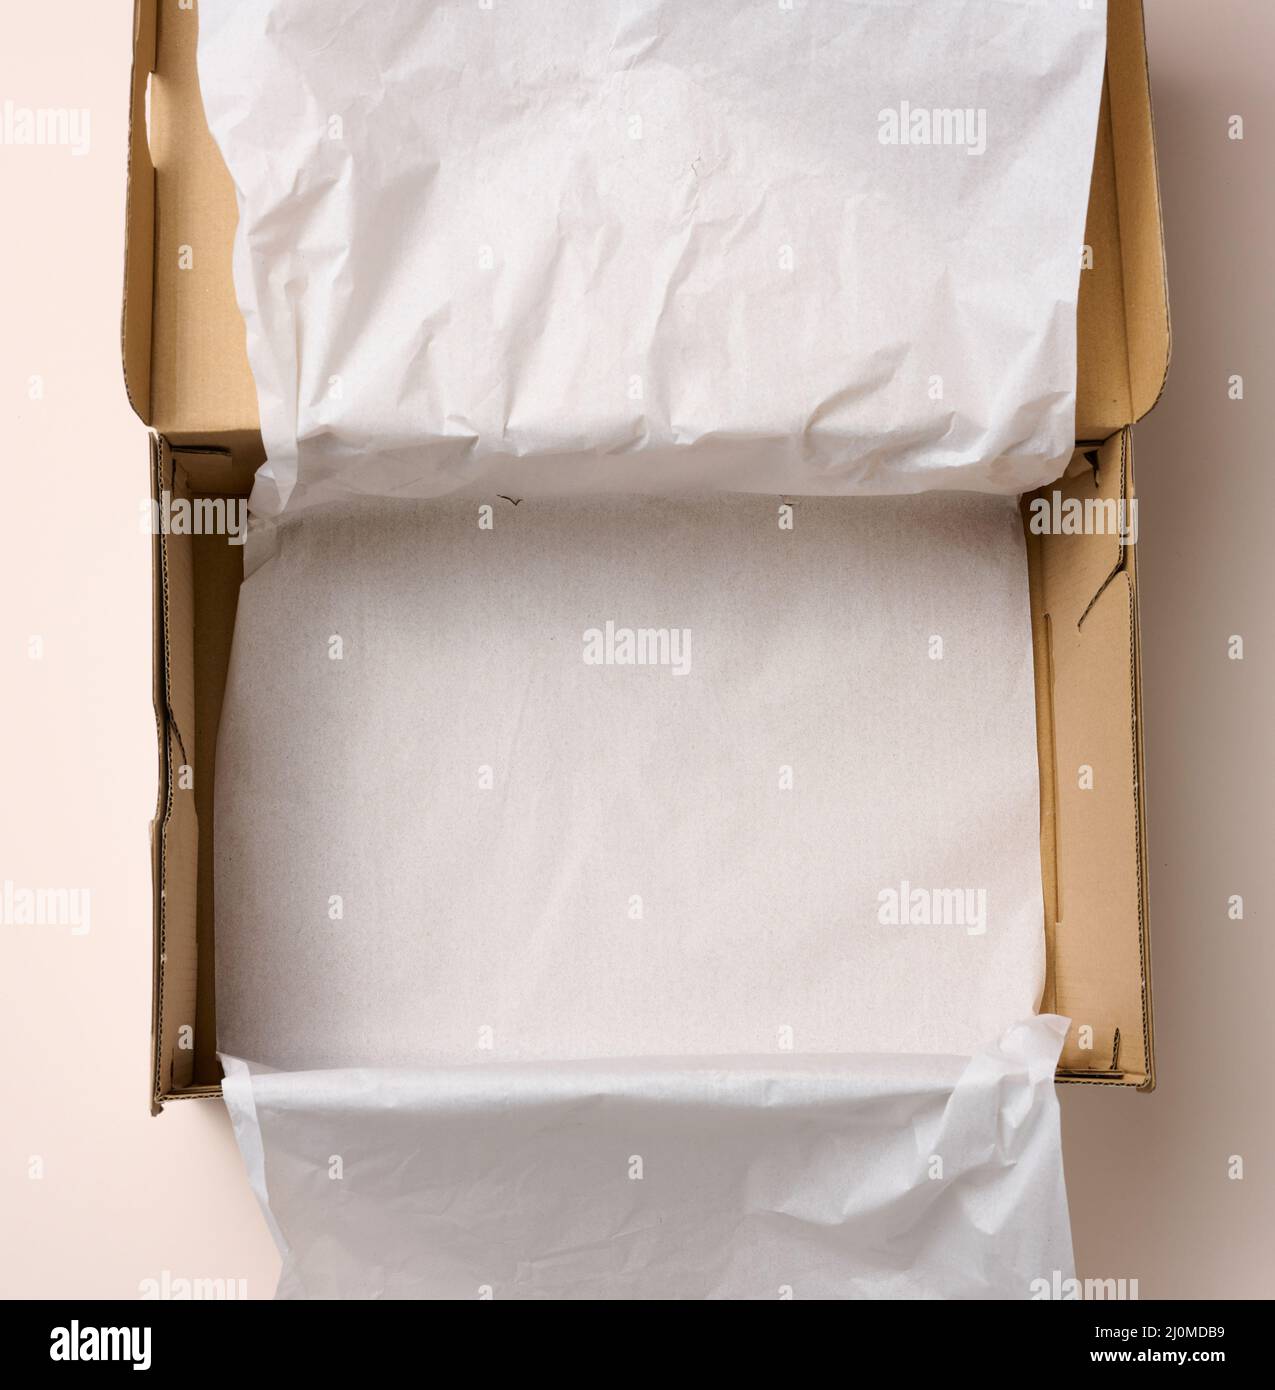 Ouvrir la boîte vide pour chaussures en carton, vue de dessus Photo Stock -  Alamy